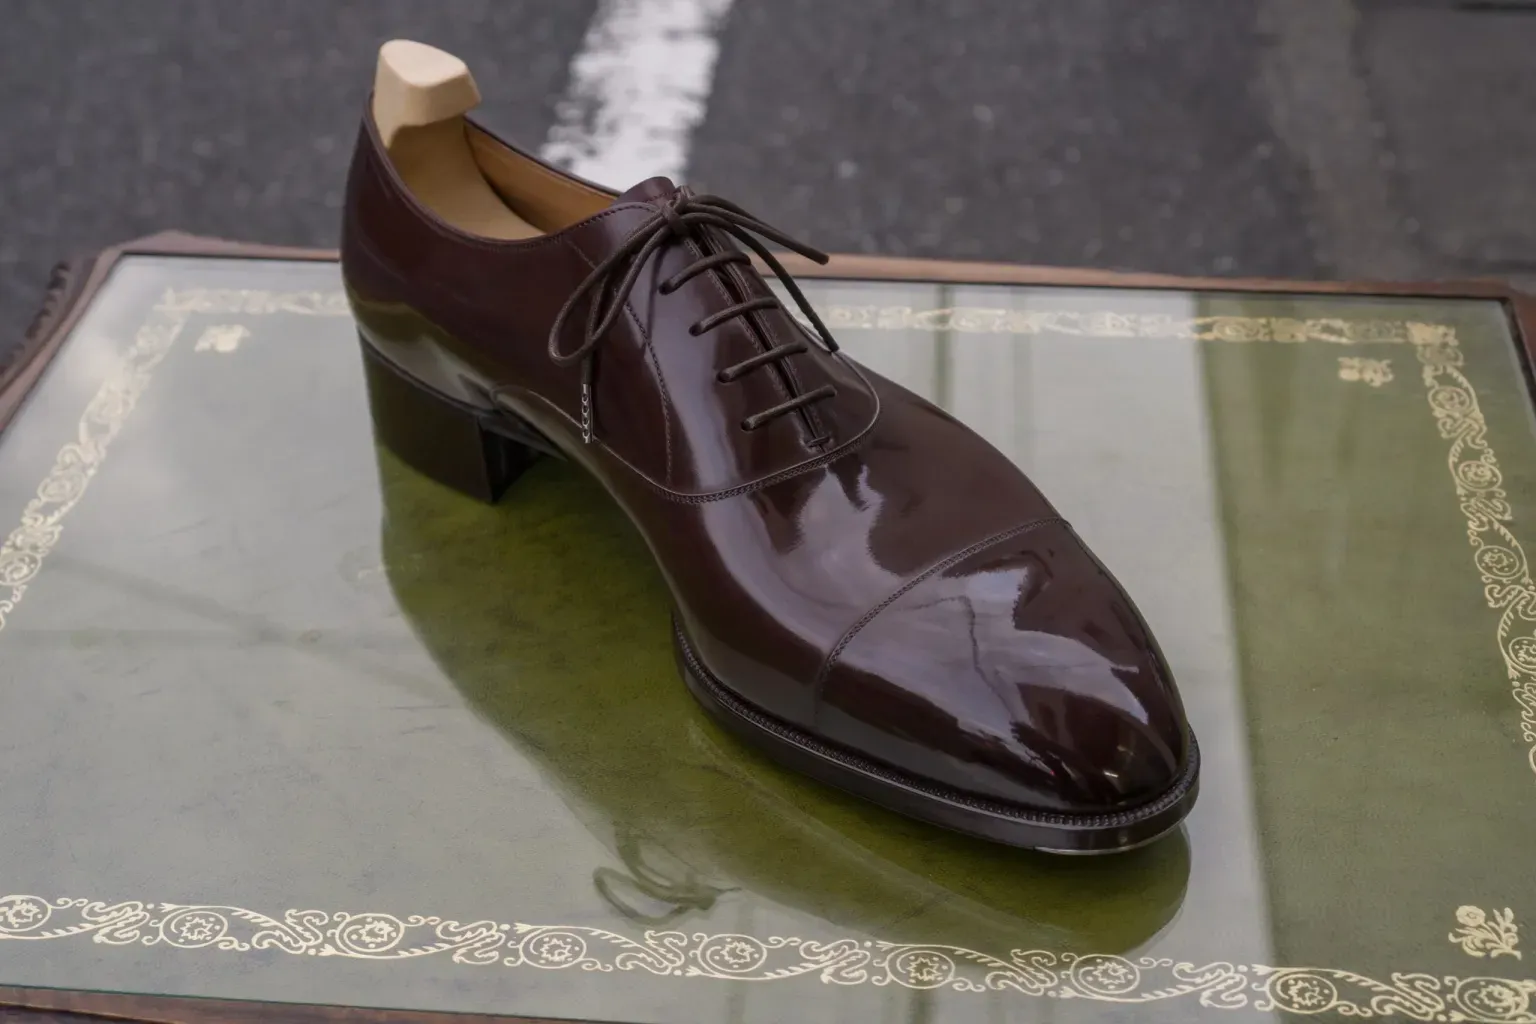 Một chiếc giày làm bằng da cổ điển từ xưởng thuộc da Freudenberg của Đức